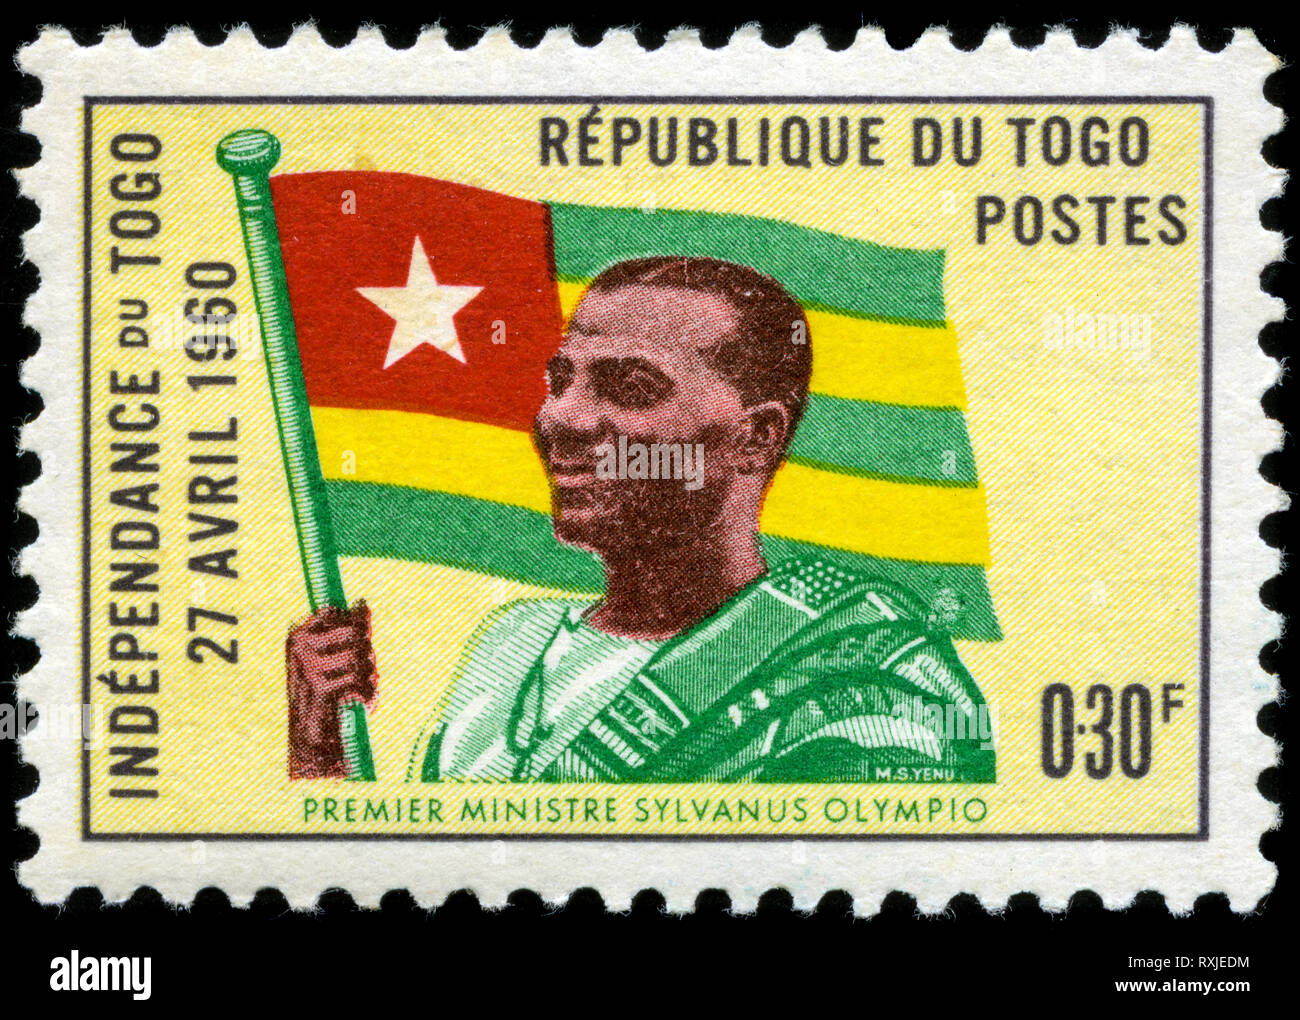 Timbre-poste du Togo dans l'indépendance série émise en 1960 Banque D'Images